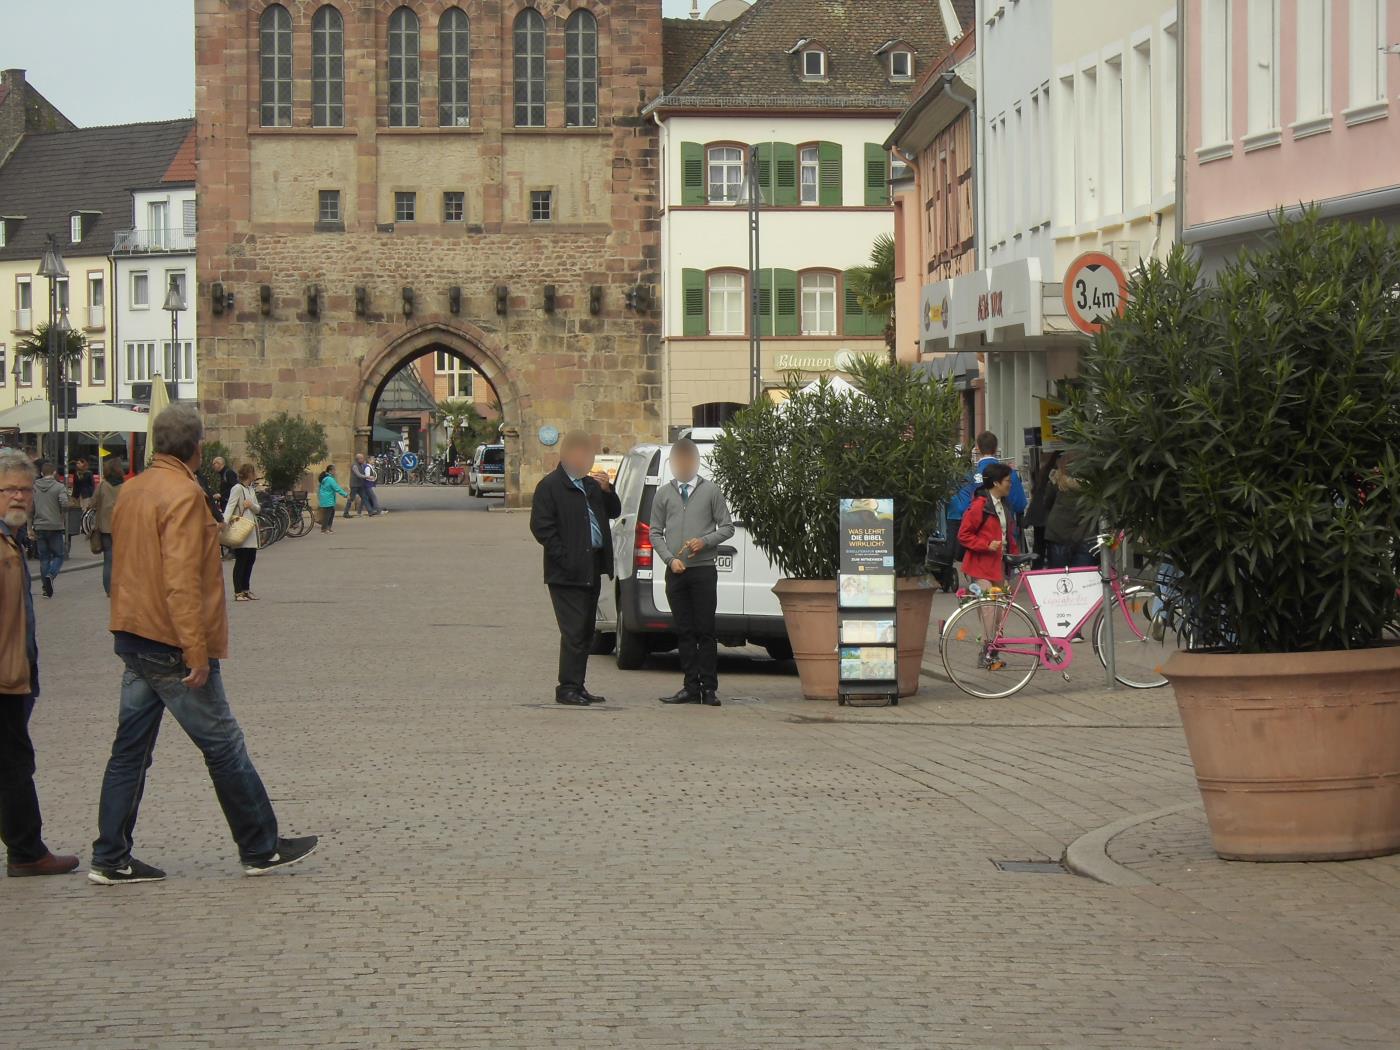 Jehovas Zeugen in Speyer blamieren sich